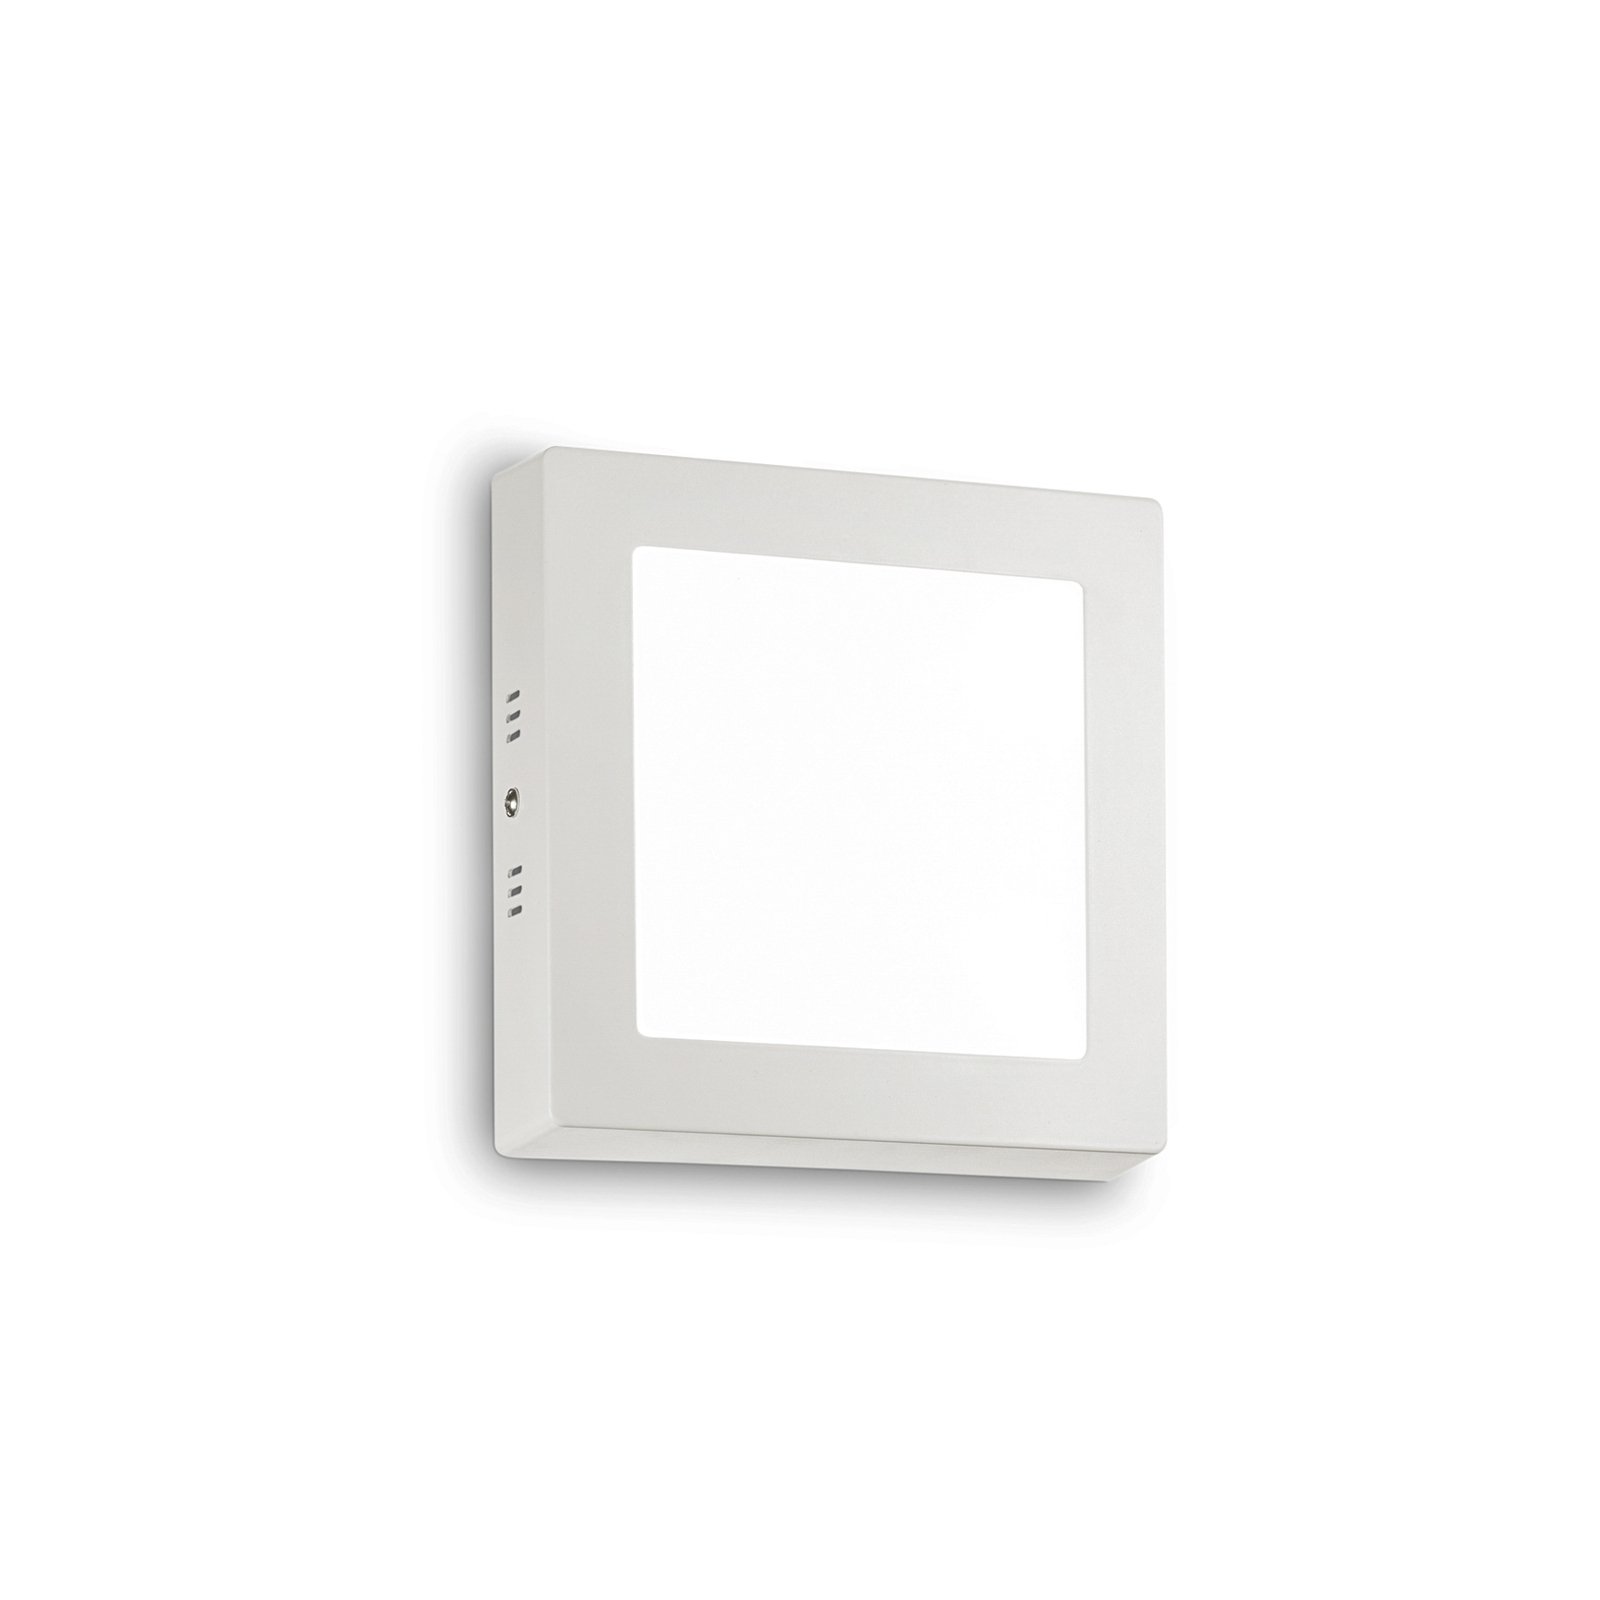 Ideal Lux Applique a LED Universale, bianco, alluminio, 17x17 cm